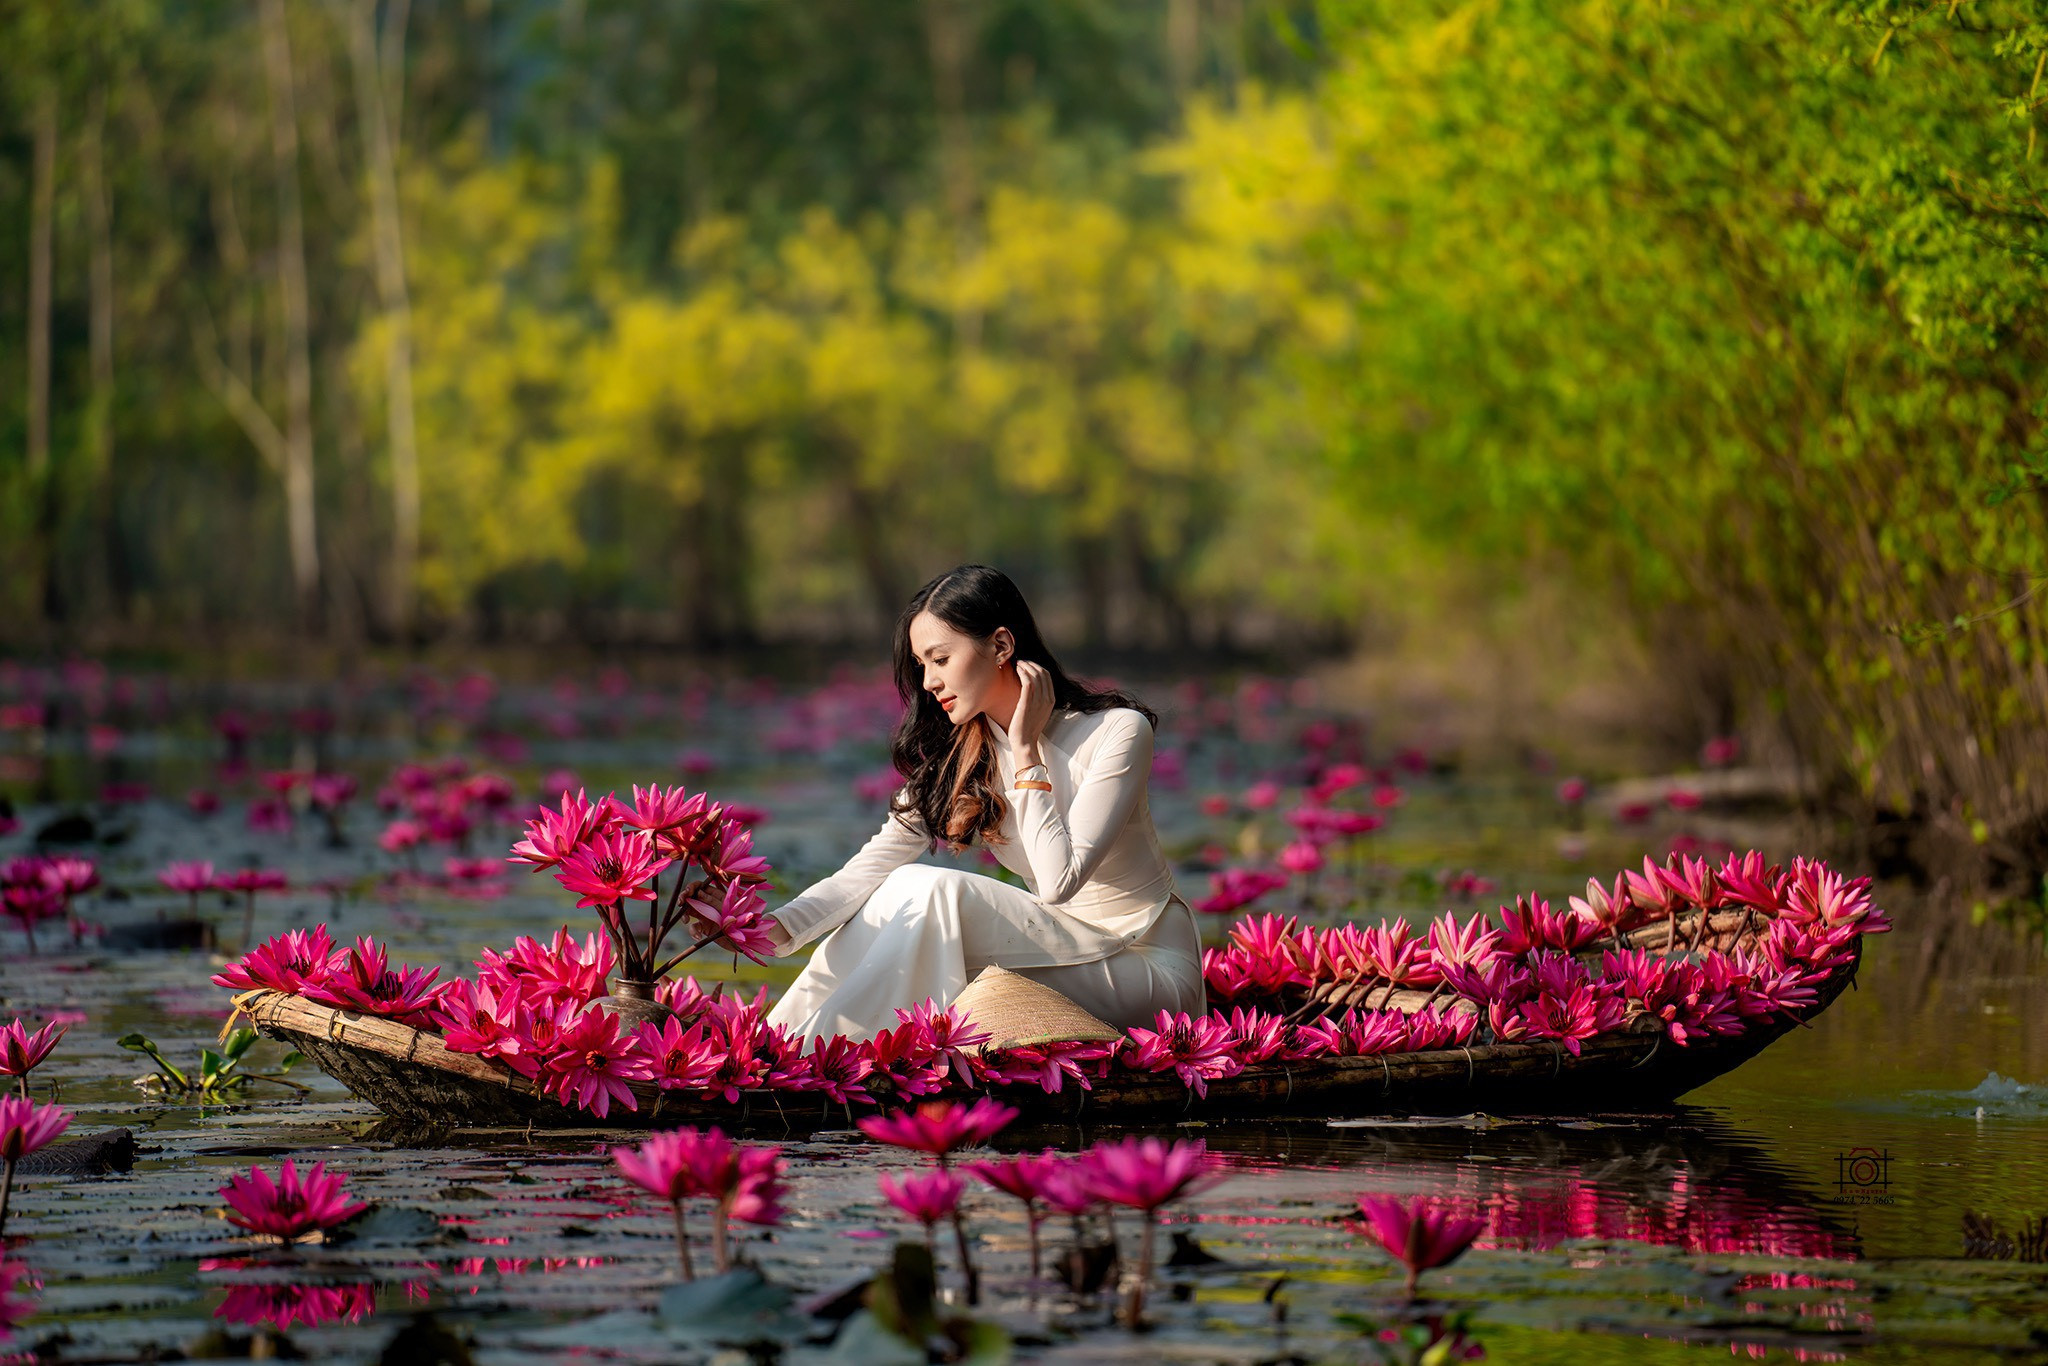 Mùa thu, tới chùa Hương ngắm thiếu nữ rạng ngời bên dòng suối \'nở hoa\'